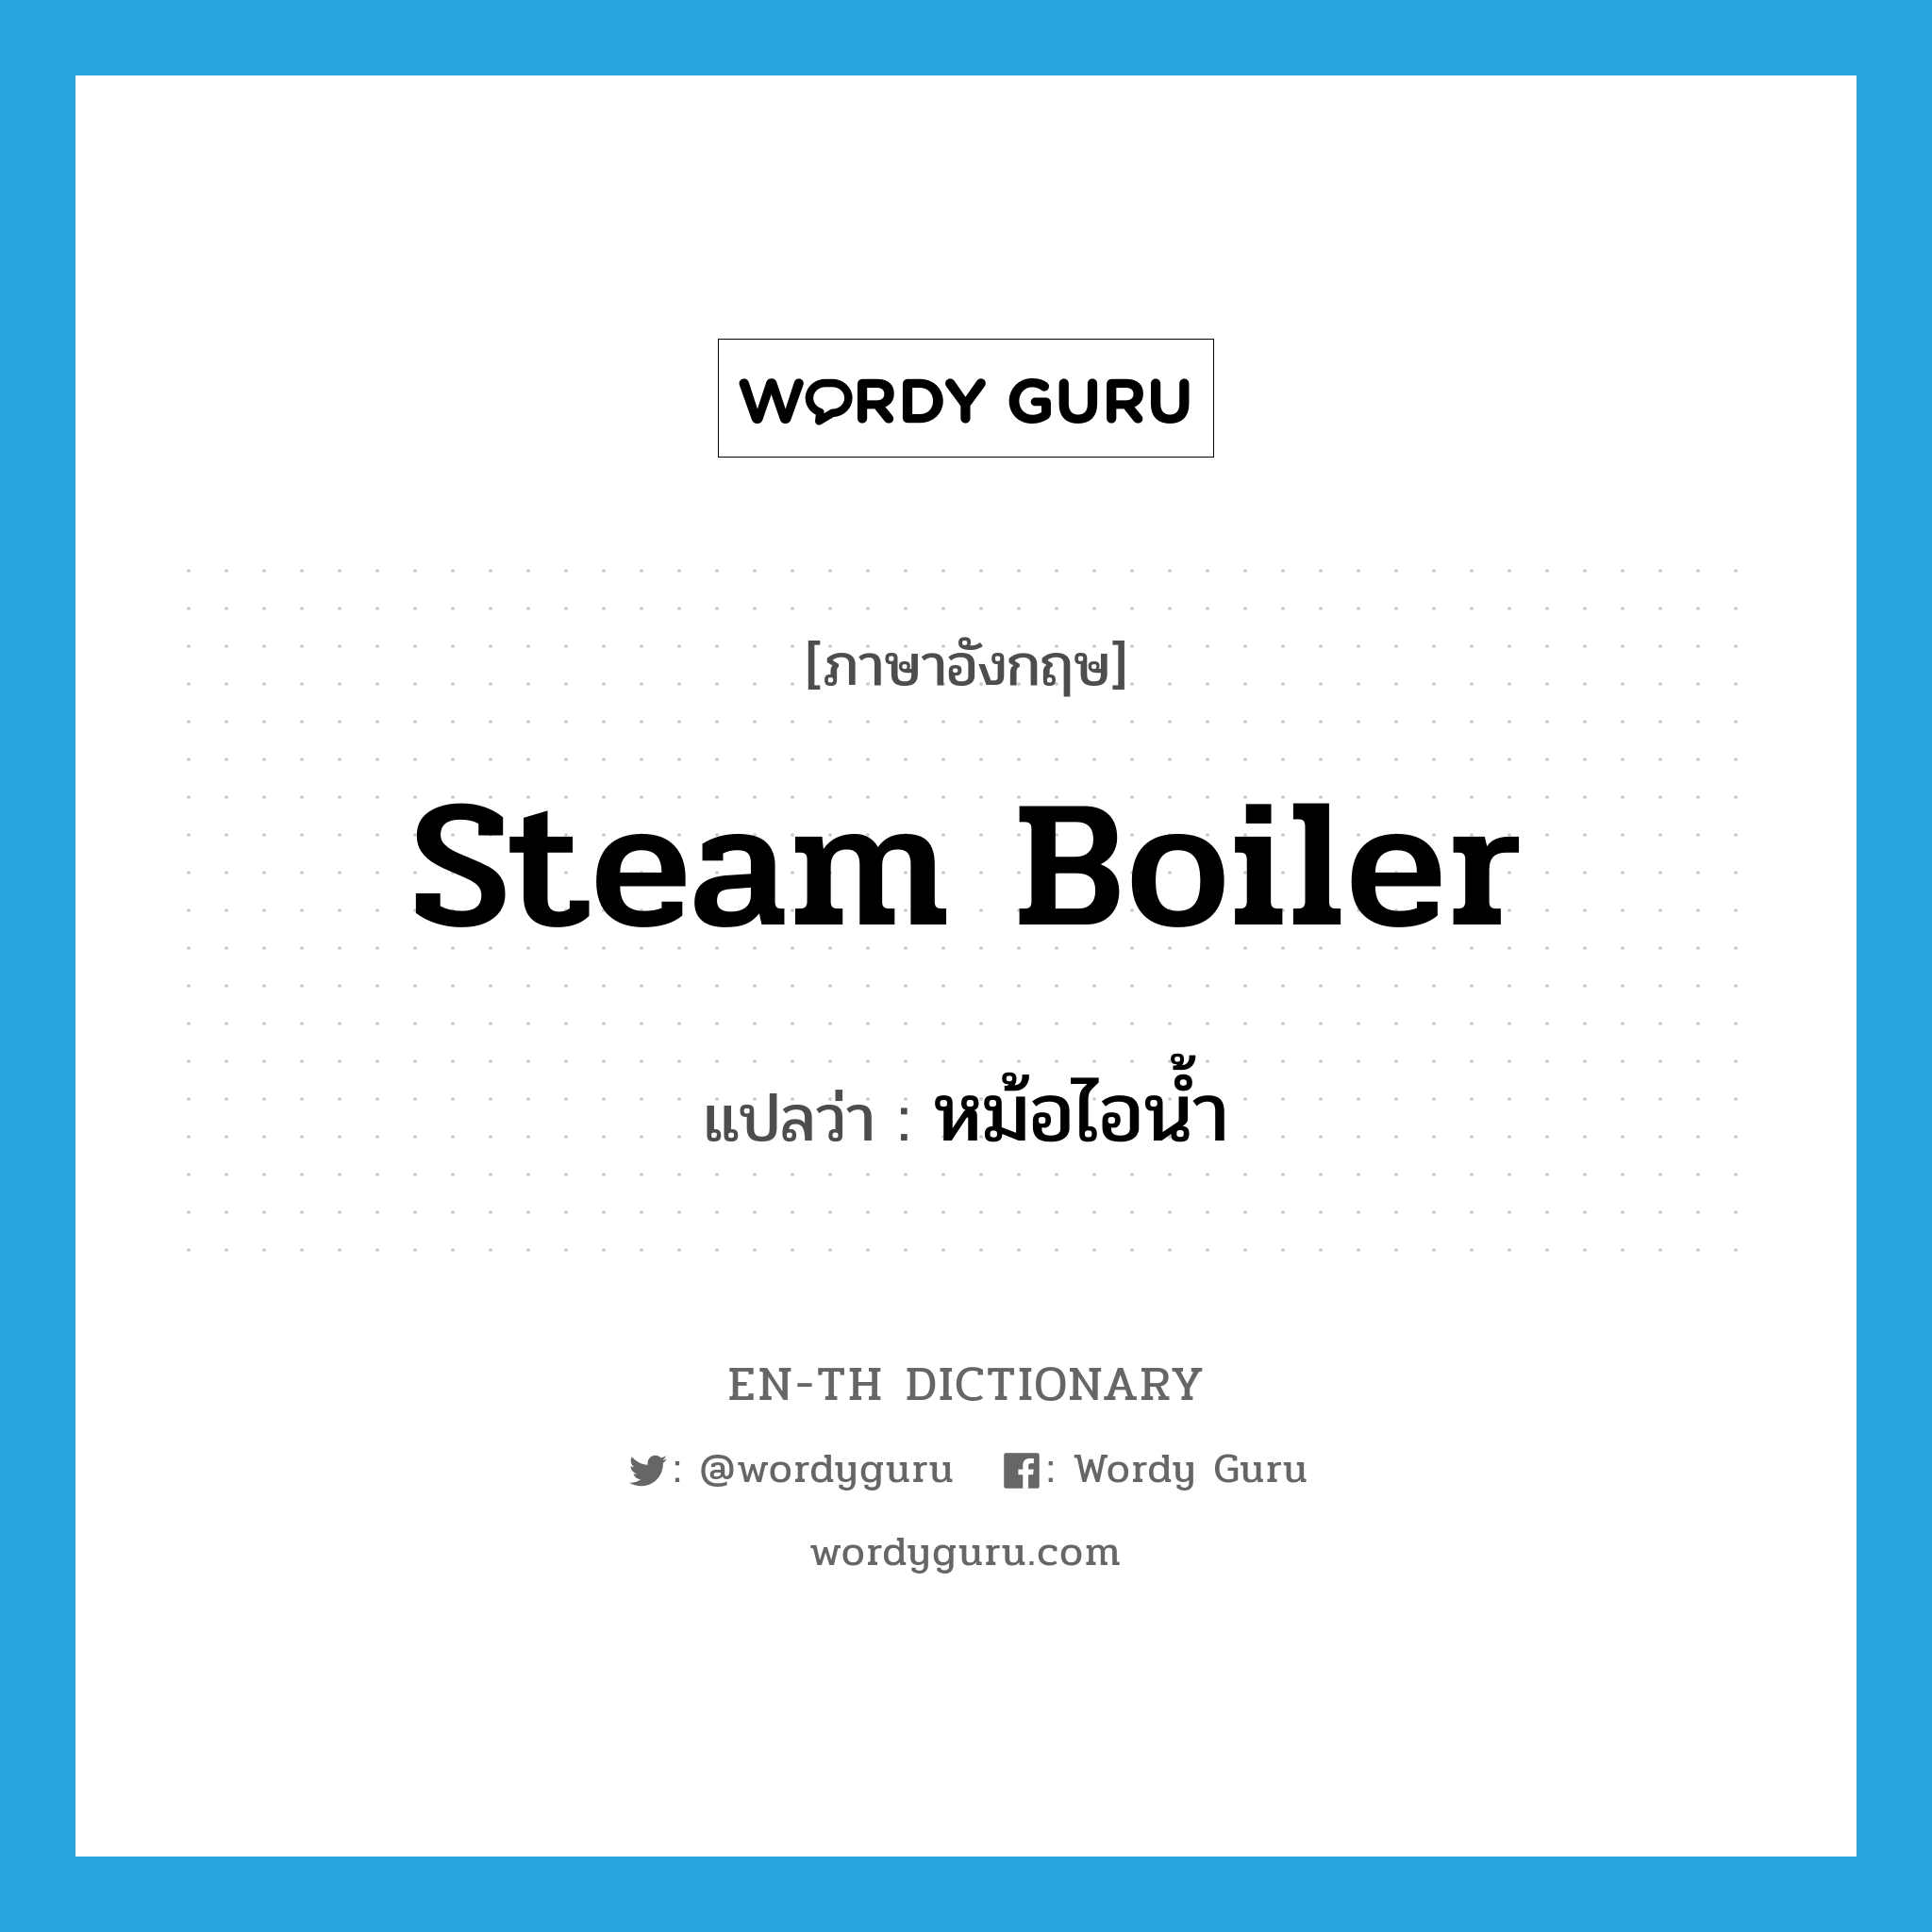 หม้อไอน้ำ ภาษาอังกฤษ?, คำศัพท์ภาษาอังกฤษ หม้อไอน้ำ แปลว่า steam boiler ประเภท N หมวด N